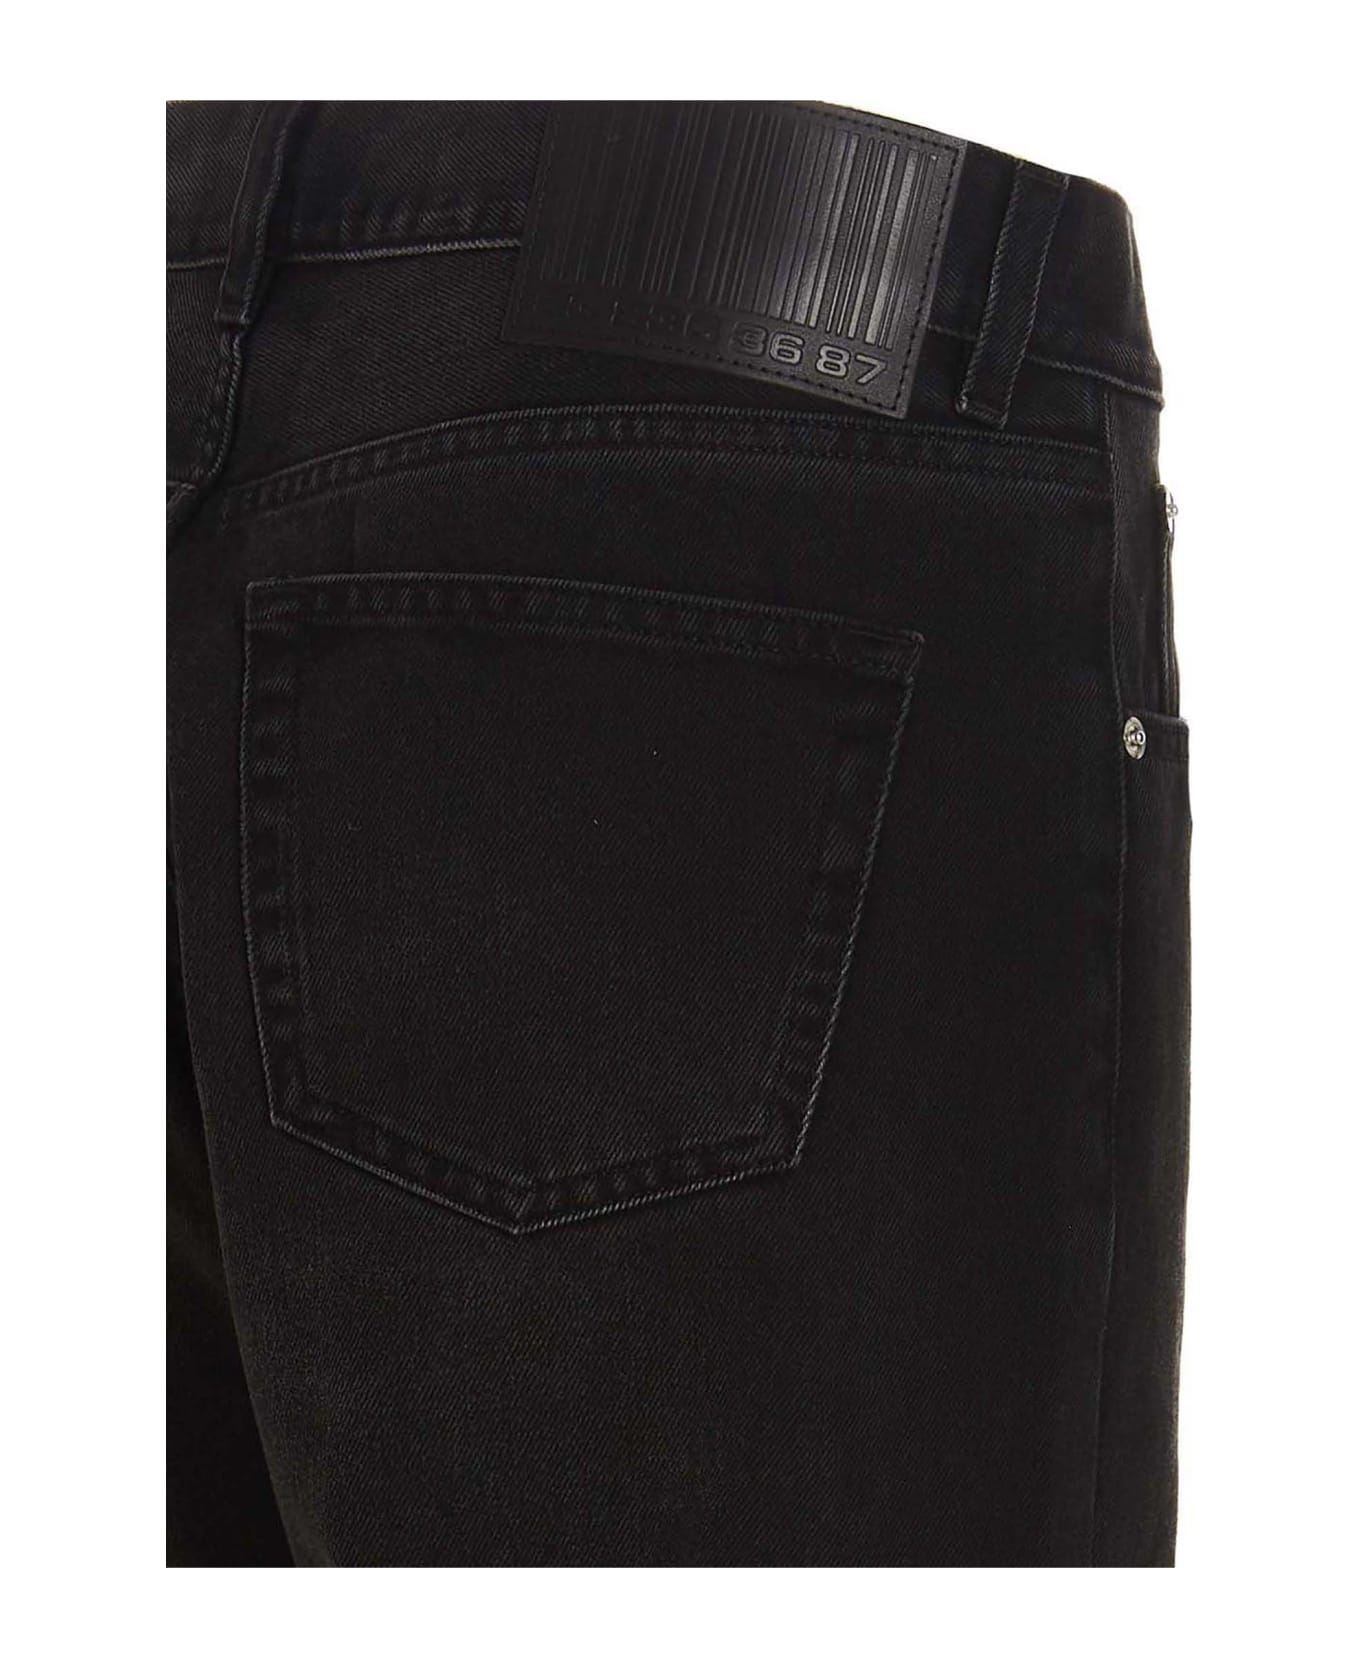 VTMNTS 5-pocket Jeans - Black  